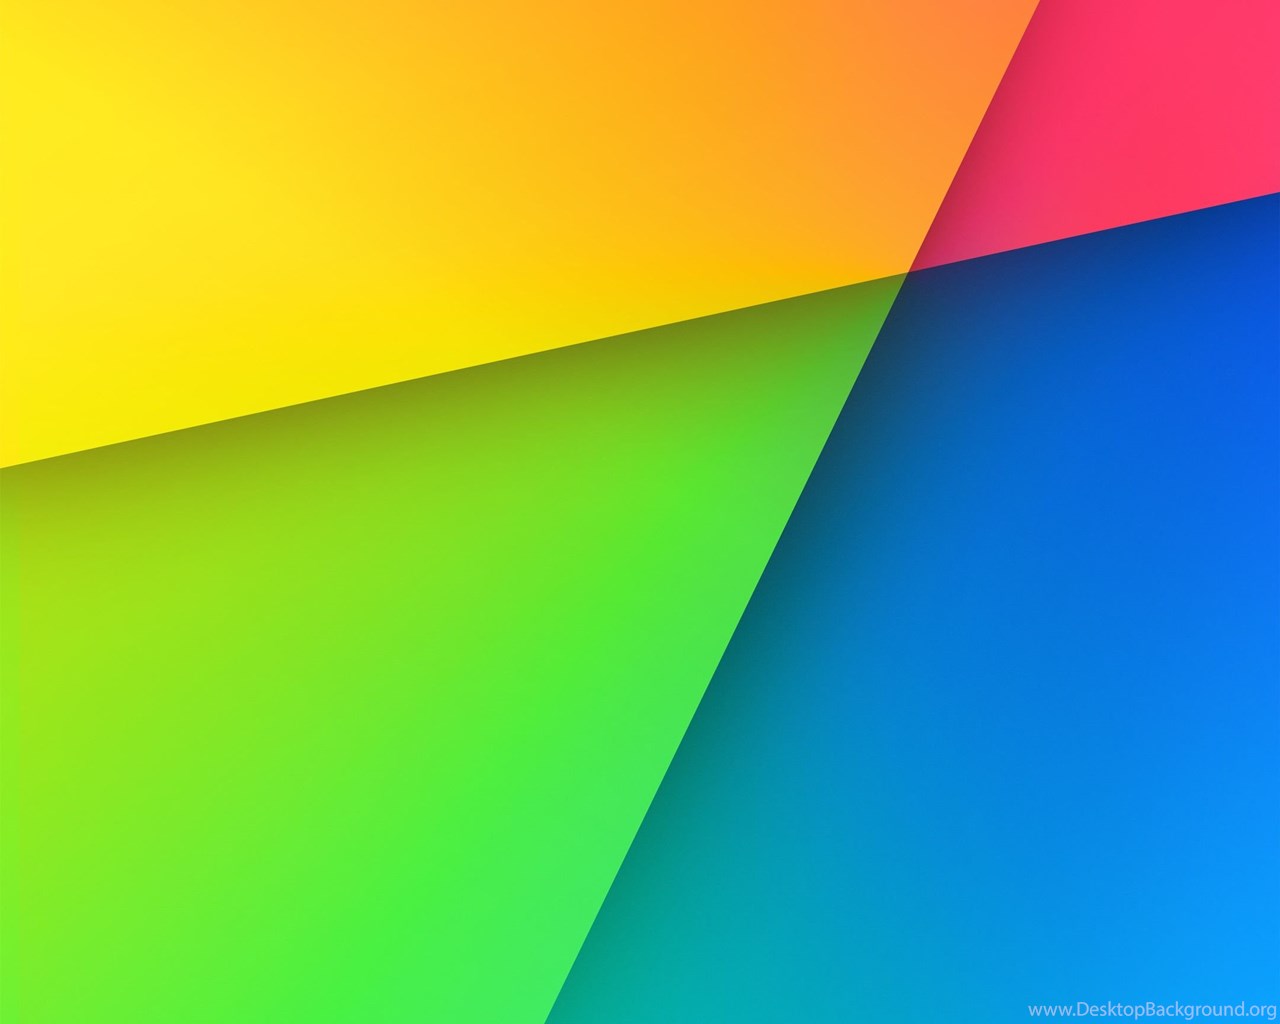 Nexus 7 Nice Wallpaper Jpg Desktop Background